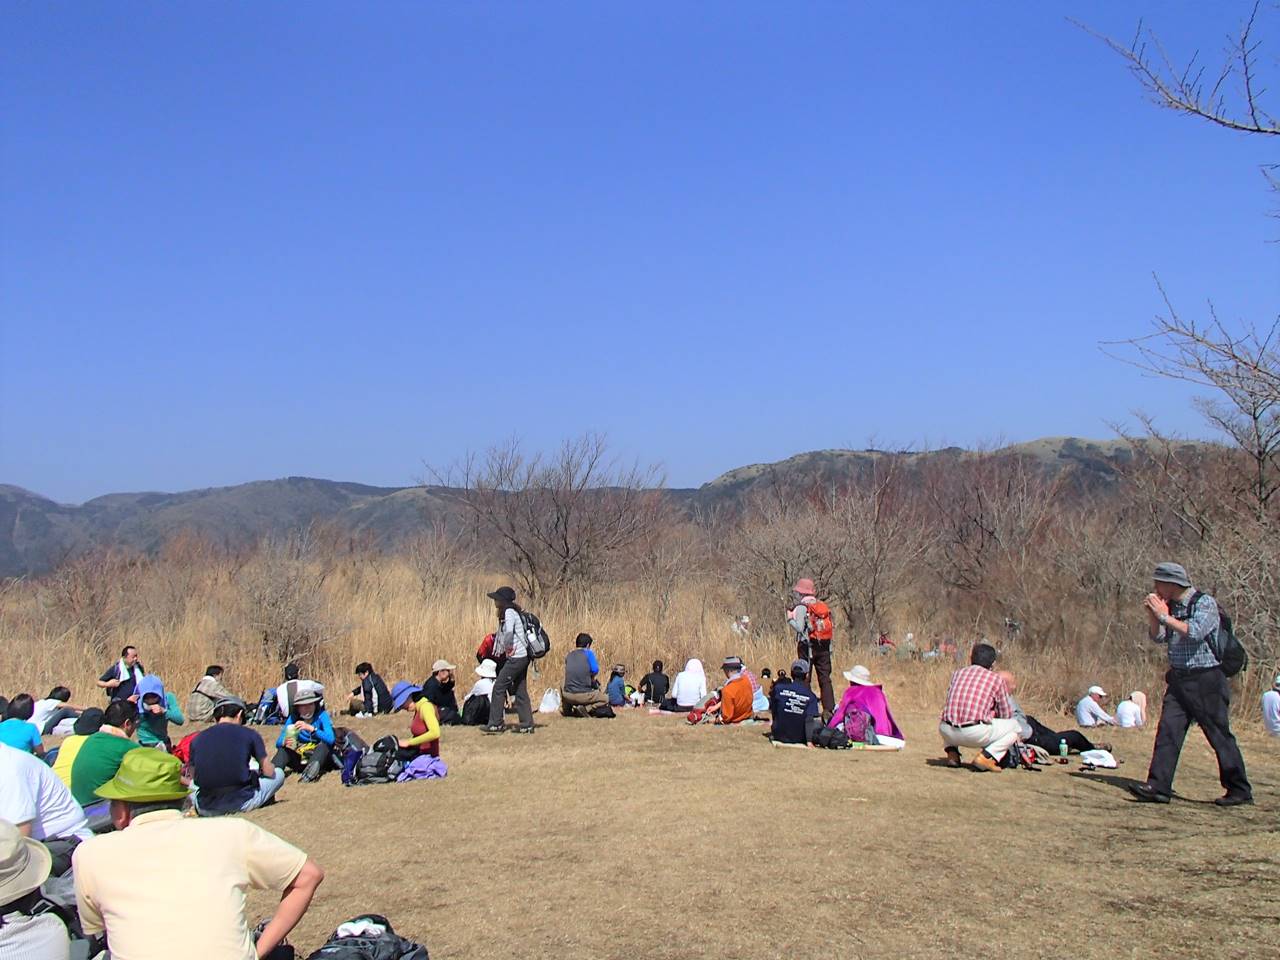 【丹沢】幕山・湯河原梅林 満開の梅の花と大展望を望む春の登山